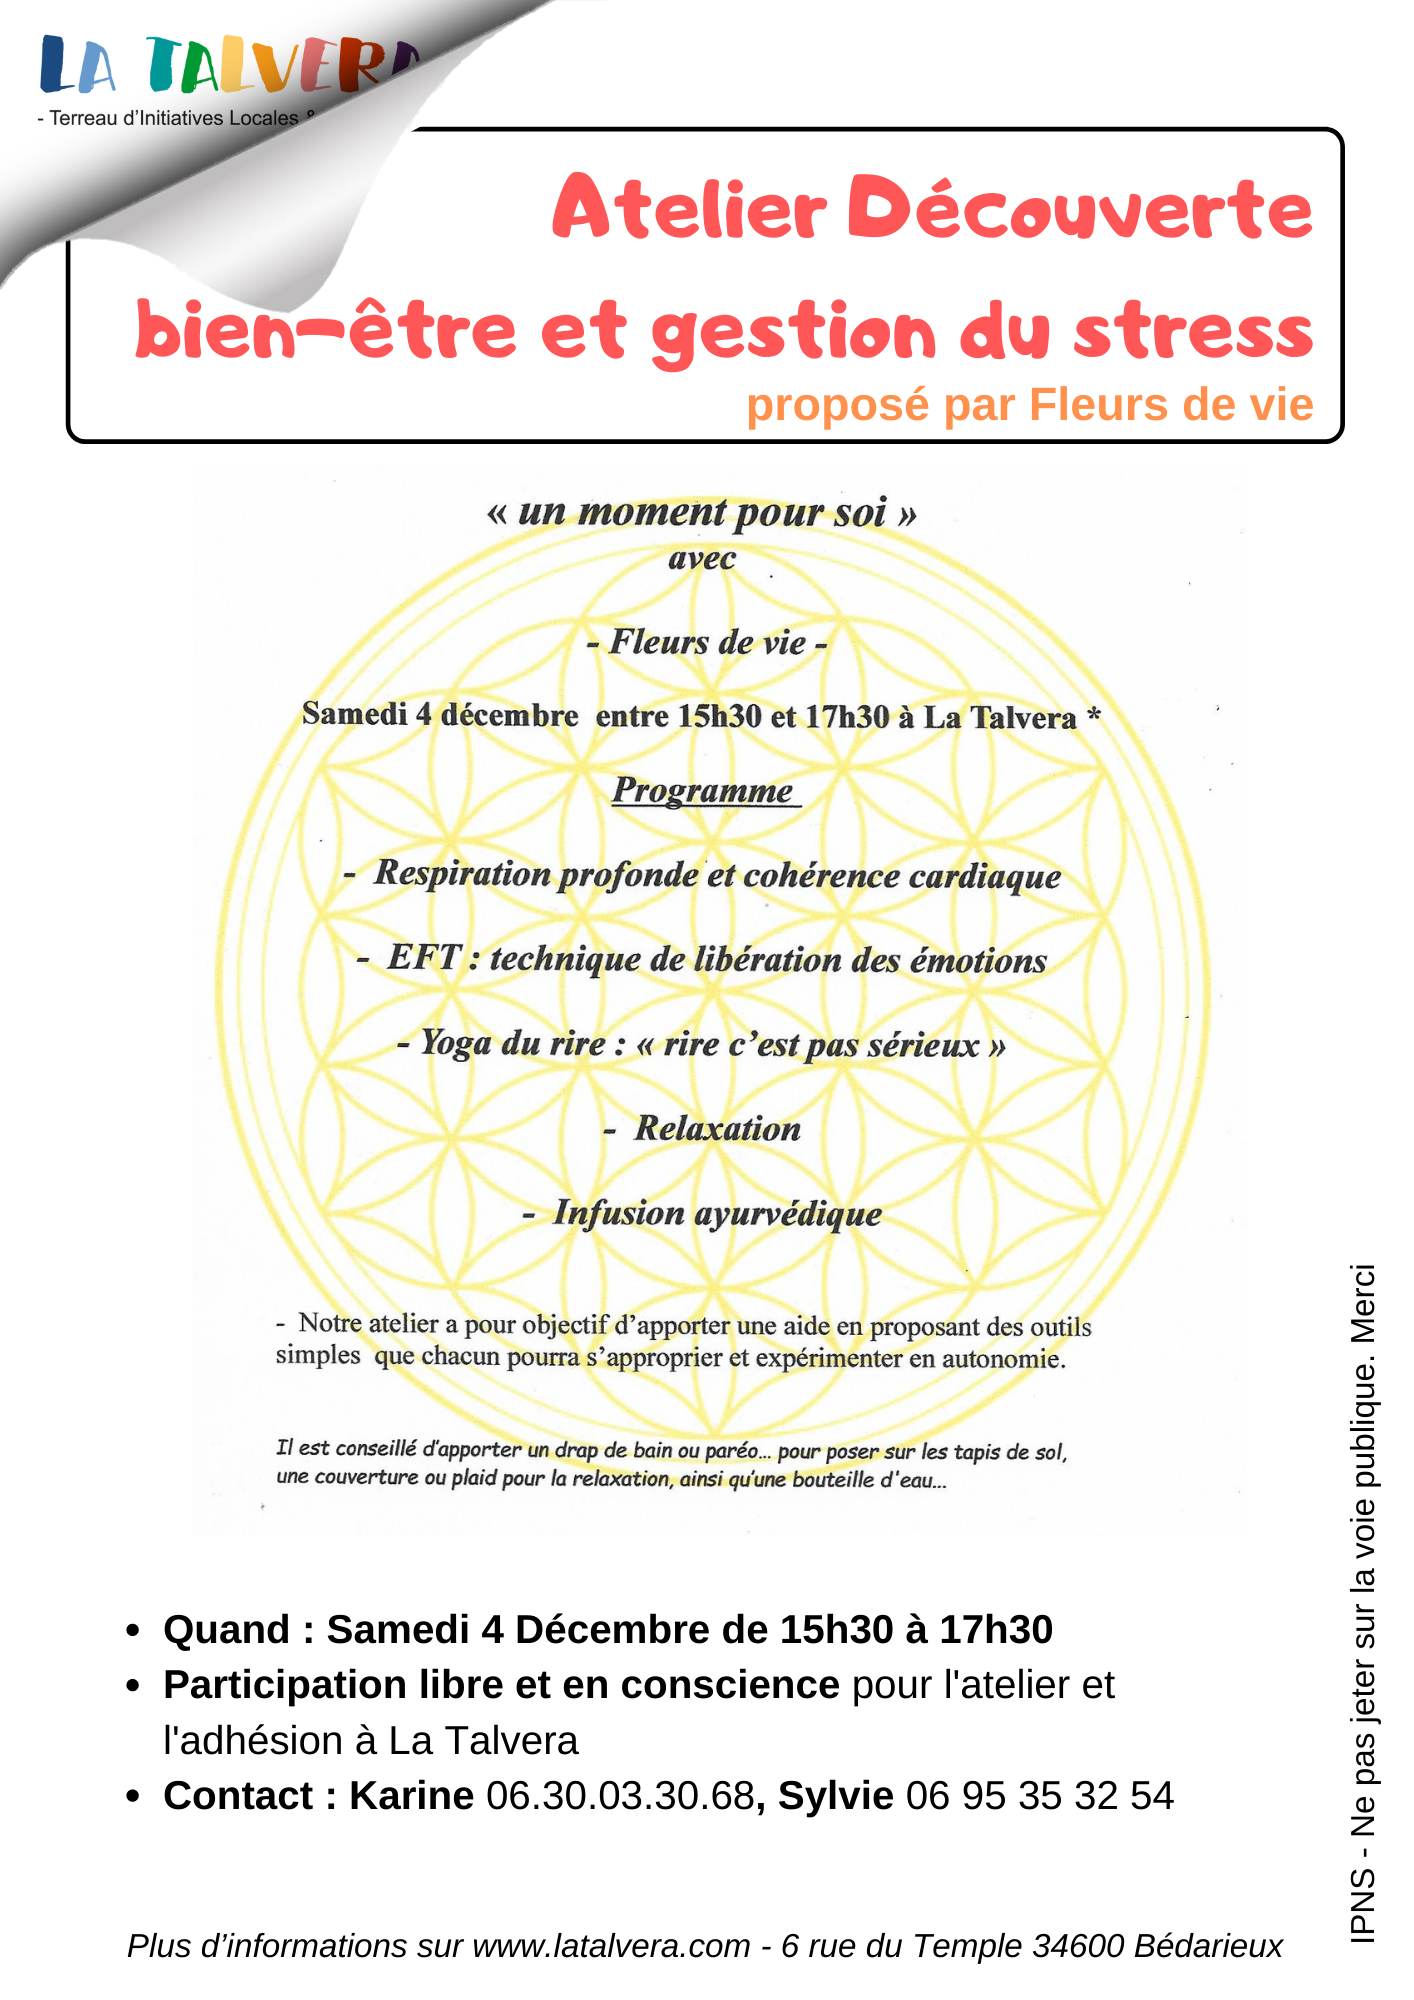 Atelier découverte - "Bien-être et gestion du stress"